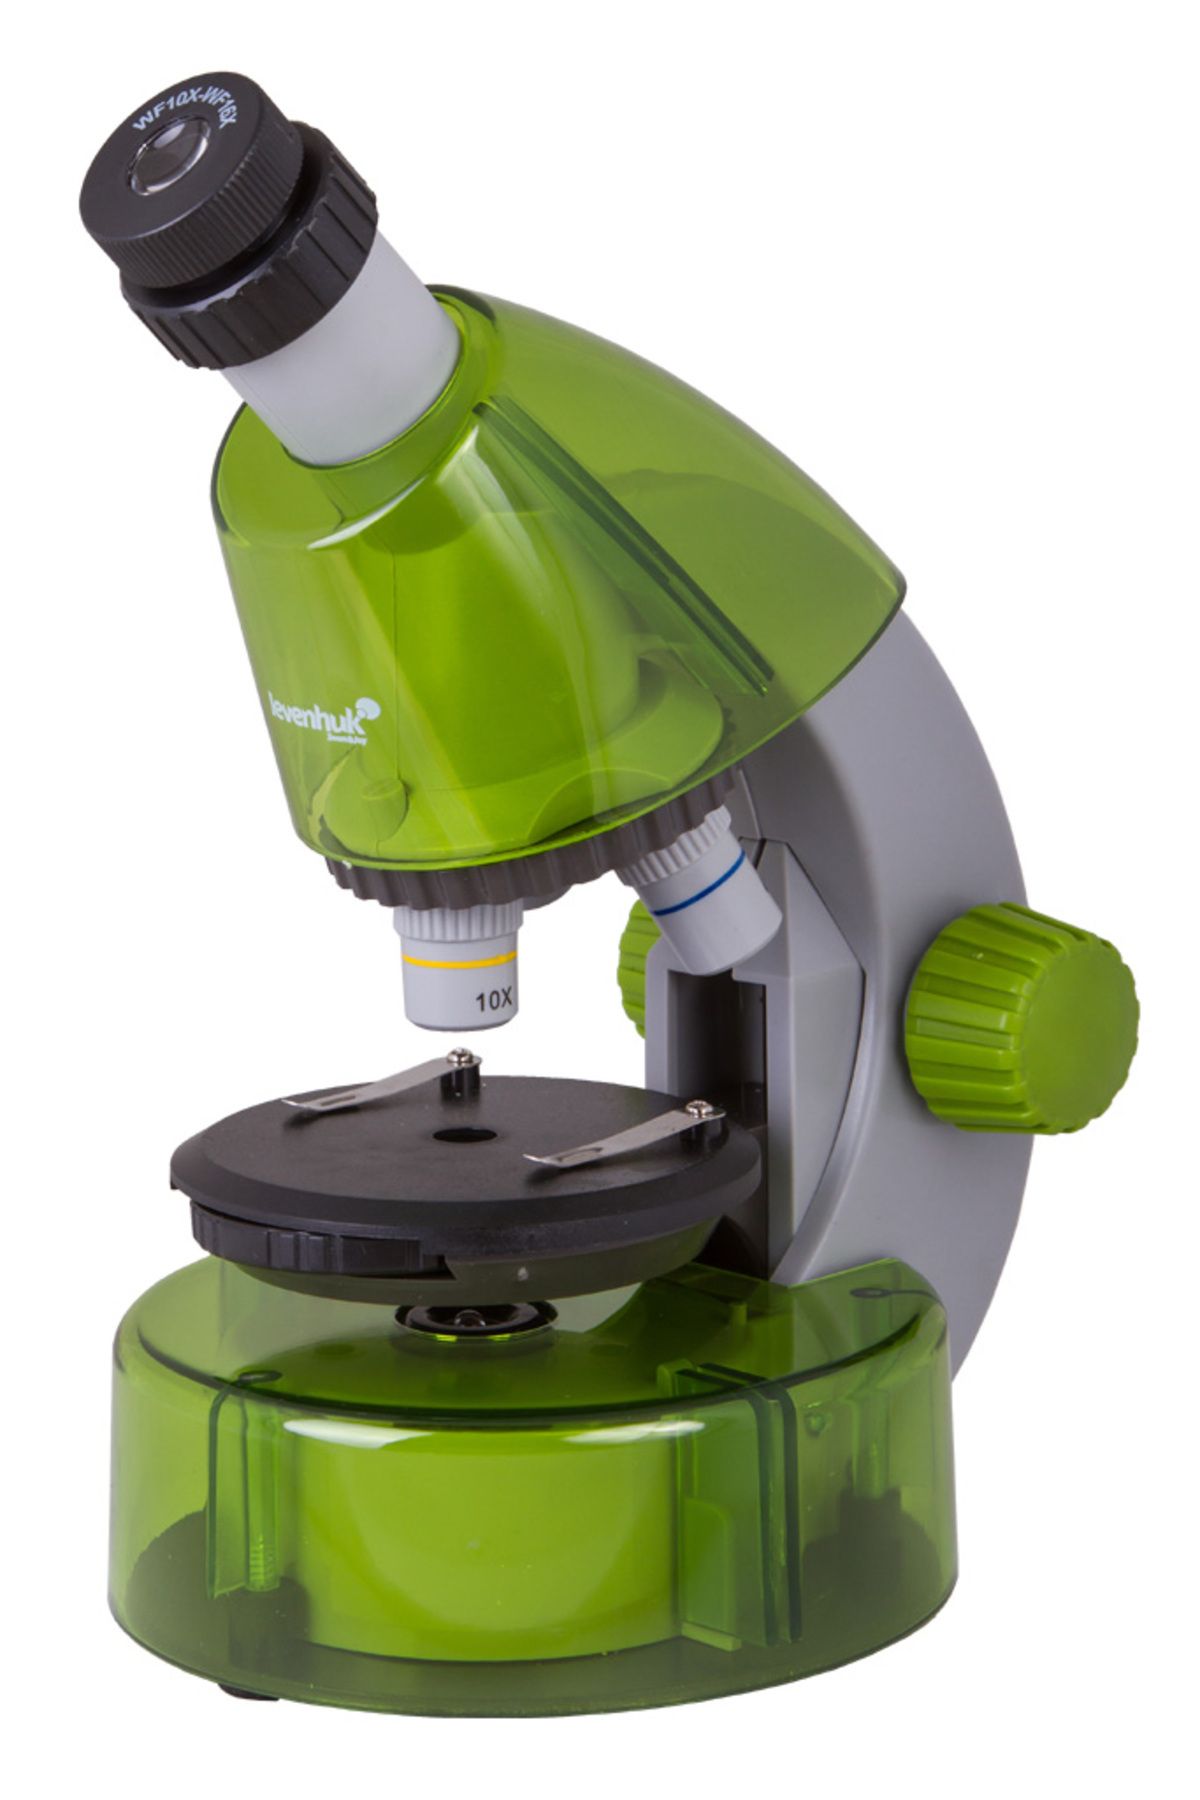 Genel Markalar Levenhuk Labzz M101 Lime/yeşil Limon Mikroskop (2563)